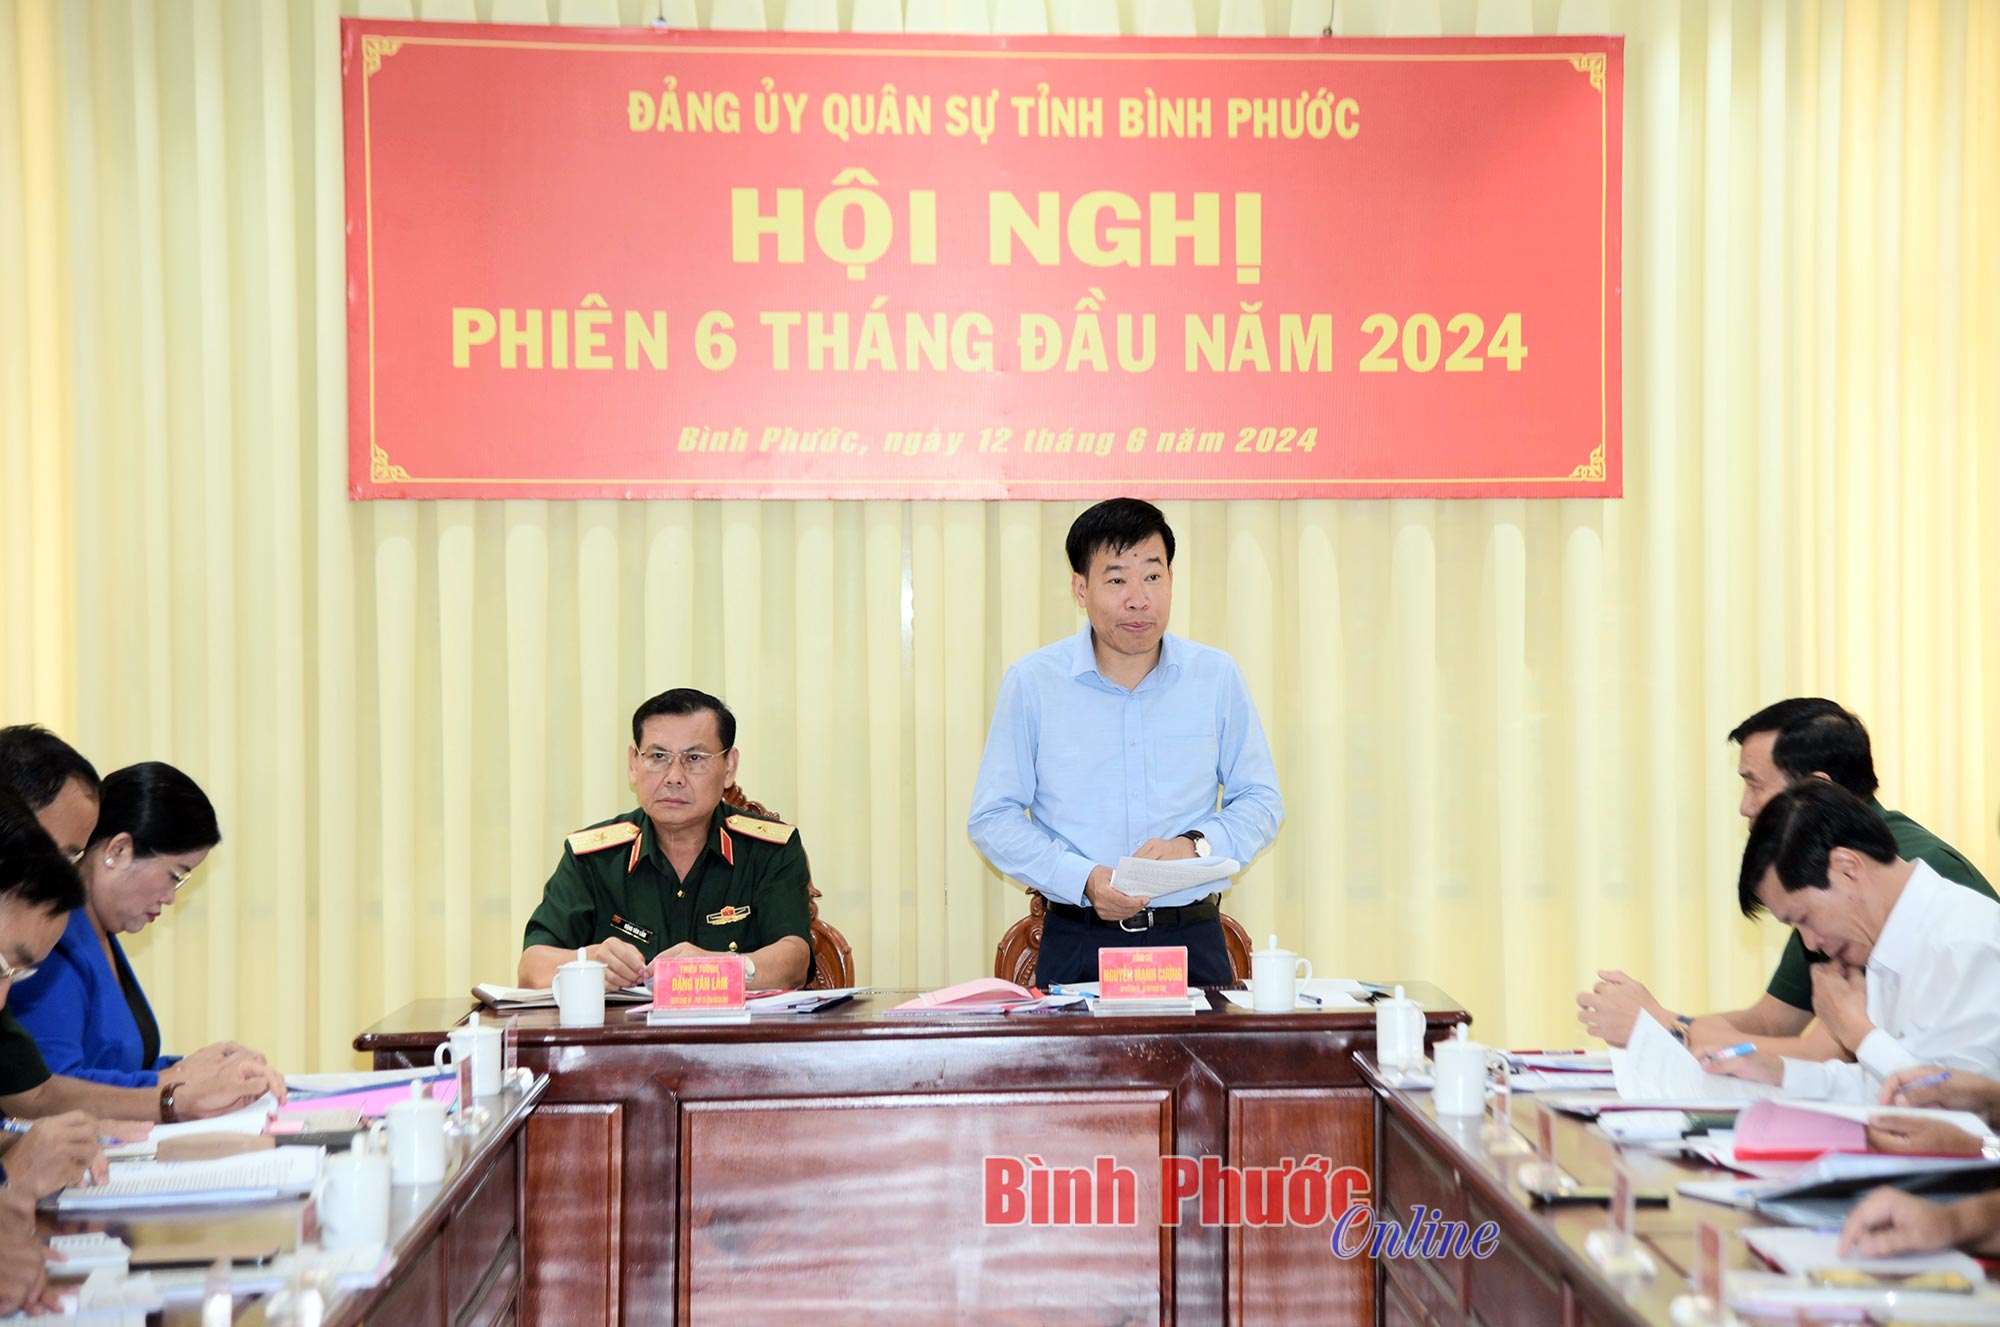 Đảng ủy Quân sự tỉnh Bình Phước hội nghị phiên 6 tháng đầu năm